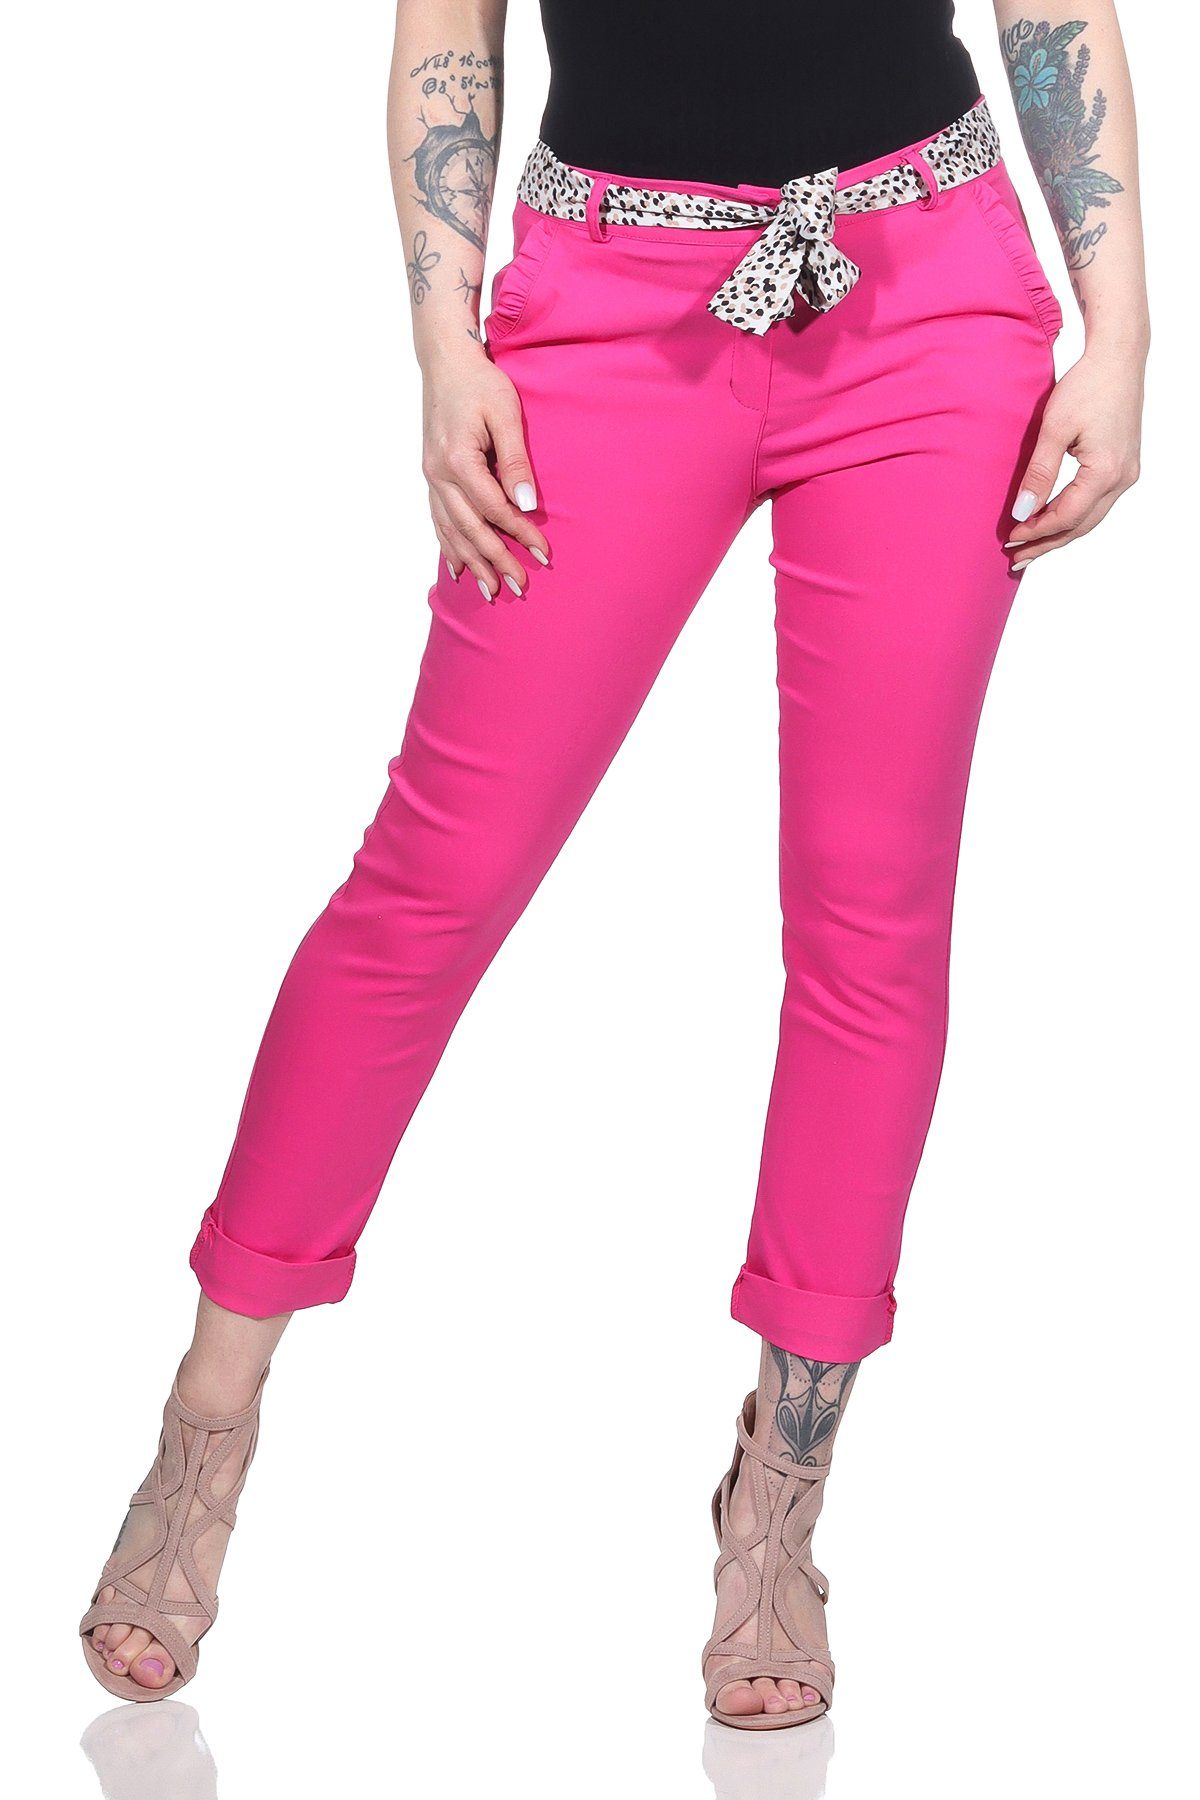 Rosa Arbeithosen » für Arbeithosen Pinke kaufen | OTTO Damen